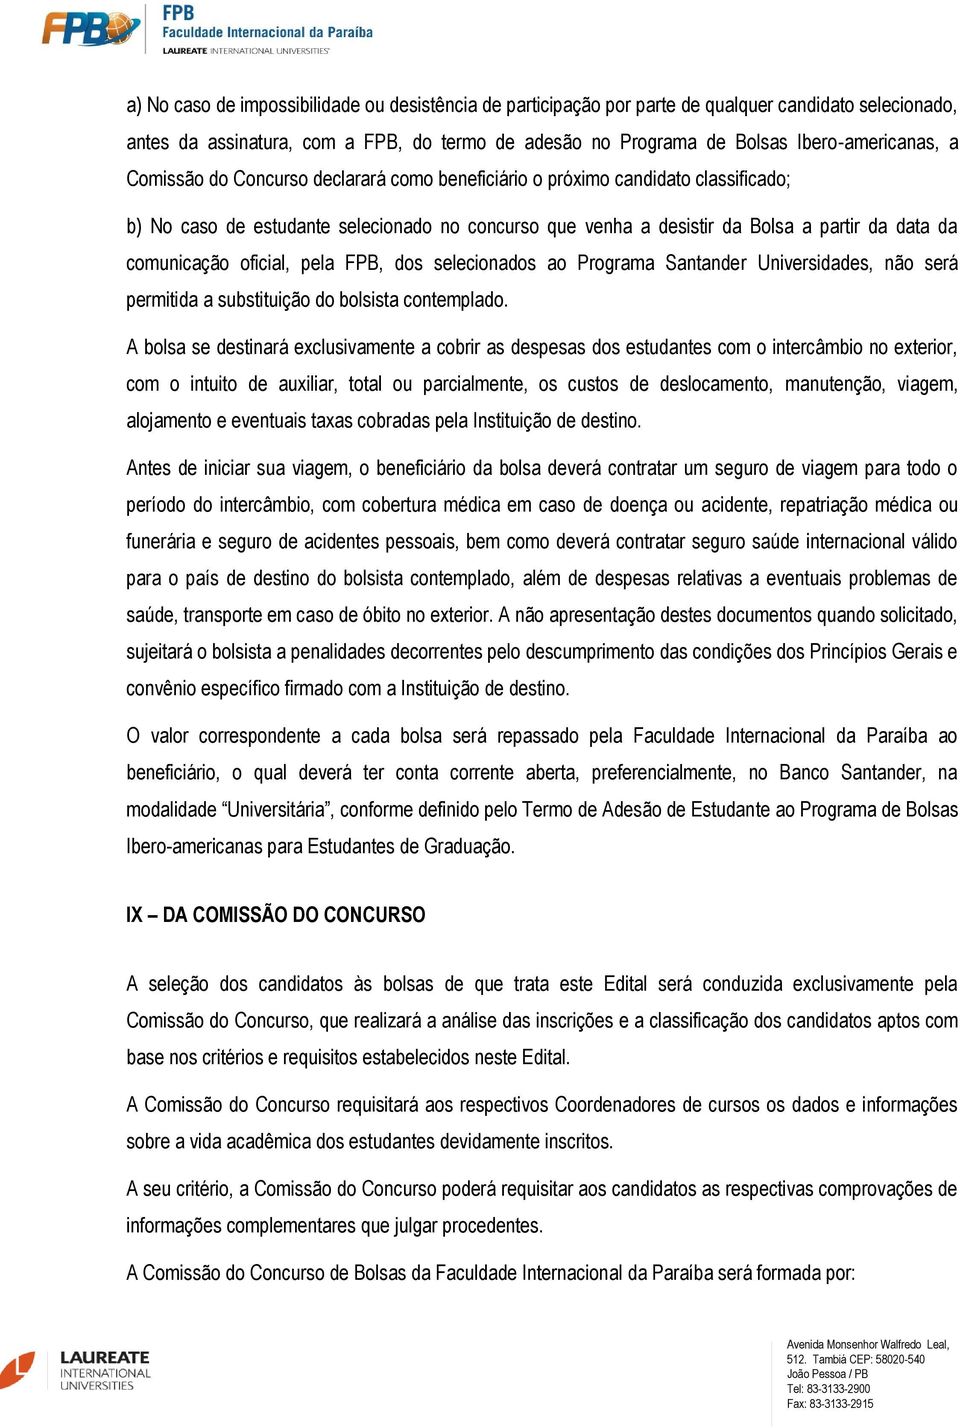 oficial, pela FPB, dos selecionados ao Programa Santander Universidades, não será permitida a substituição do bolsista contemplado.